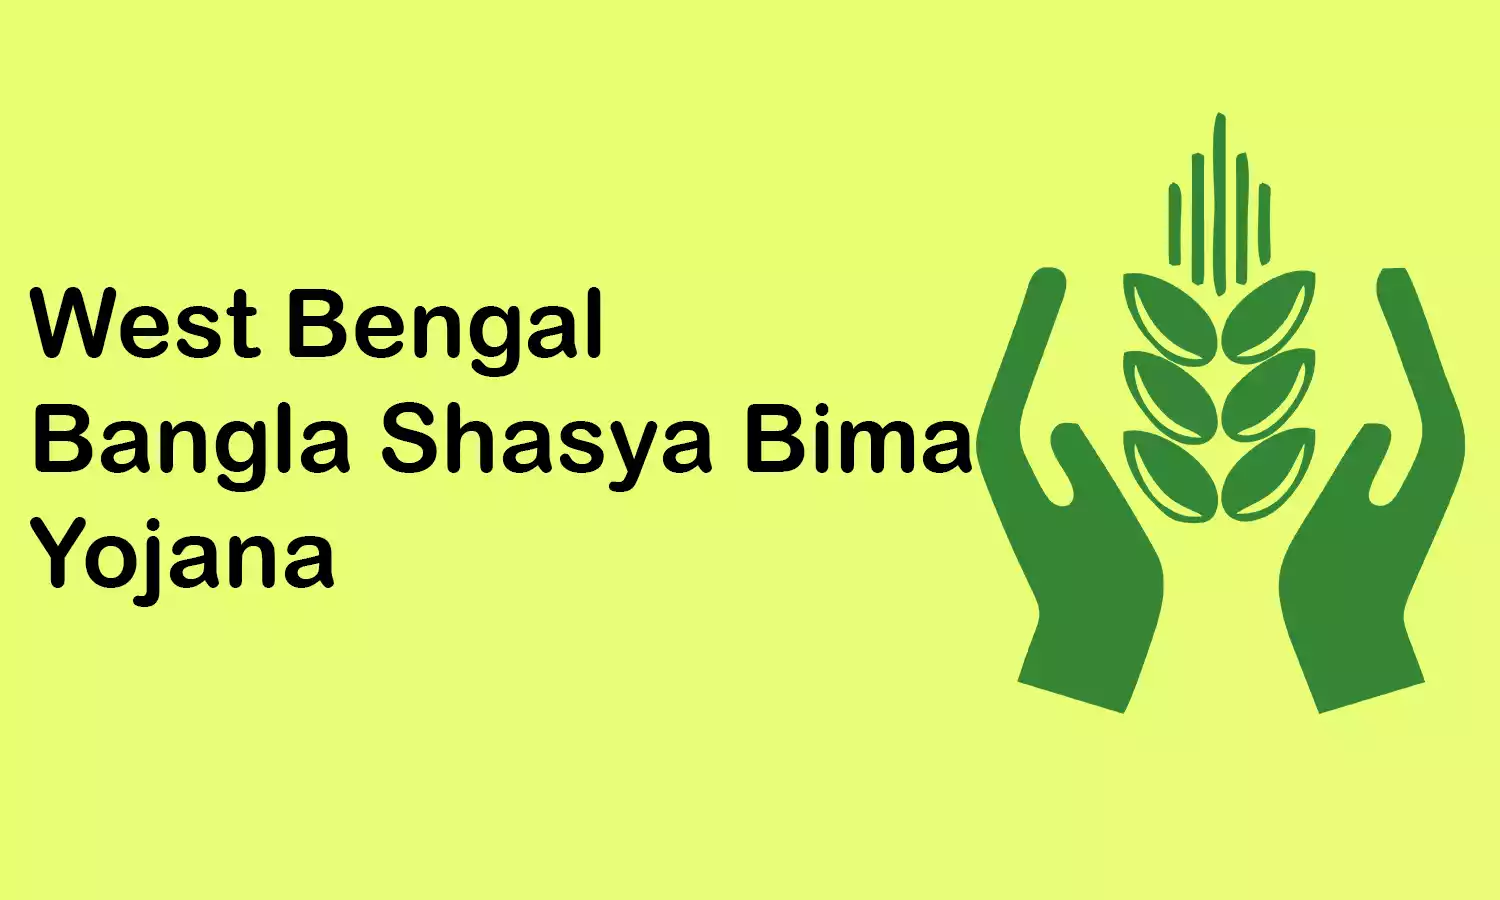 Bangla Shasya Bima